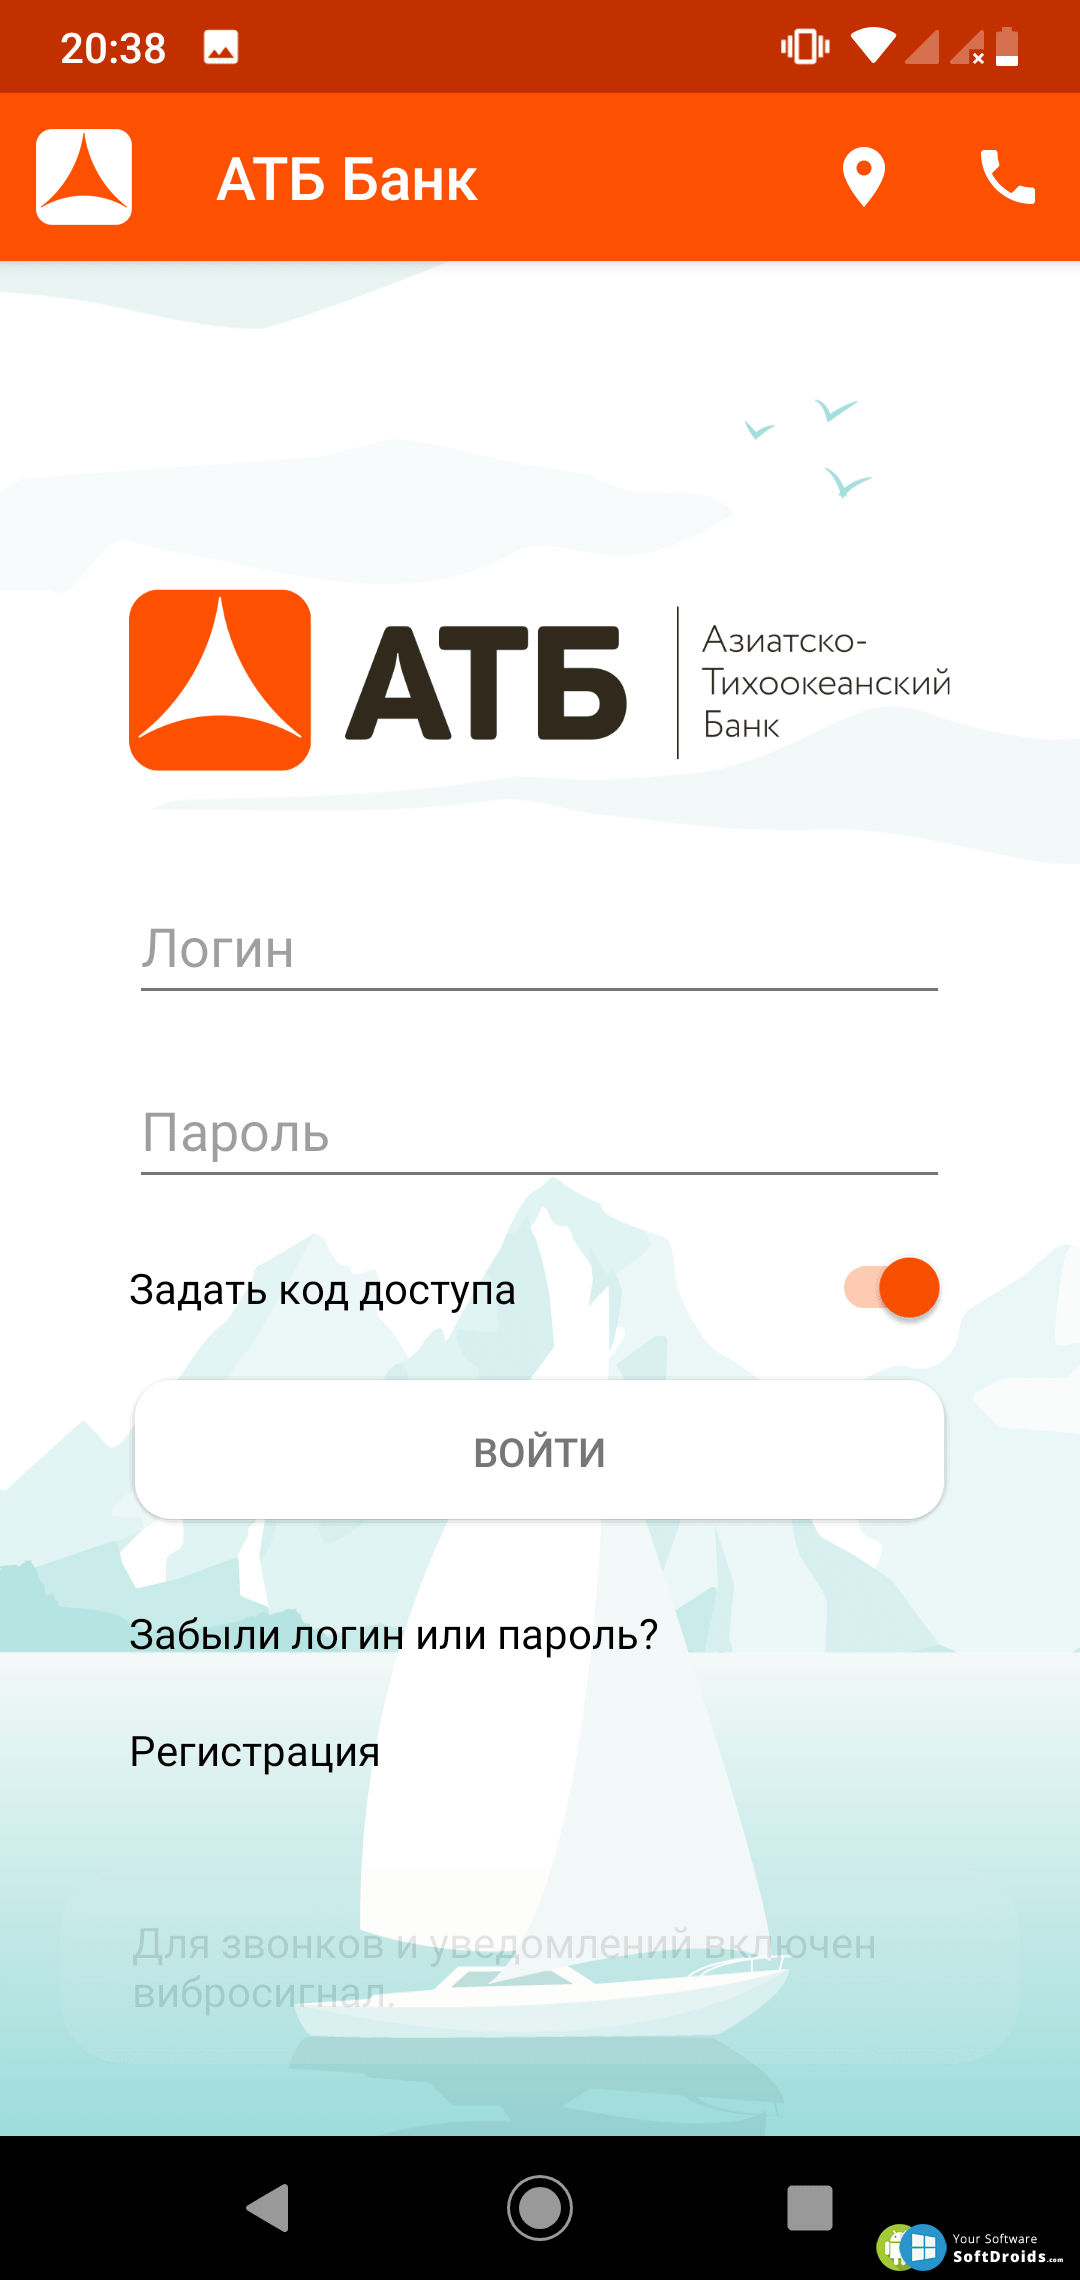 Атб банк в новосибирске. АТБ банк. Приложение банка.